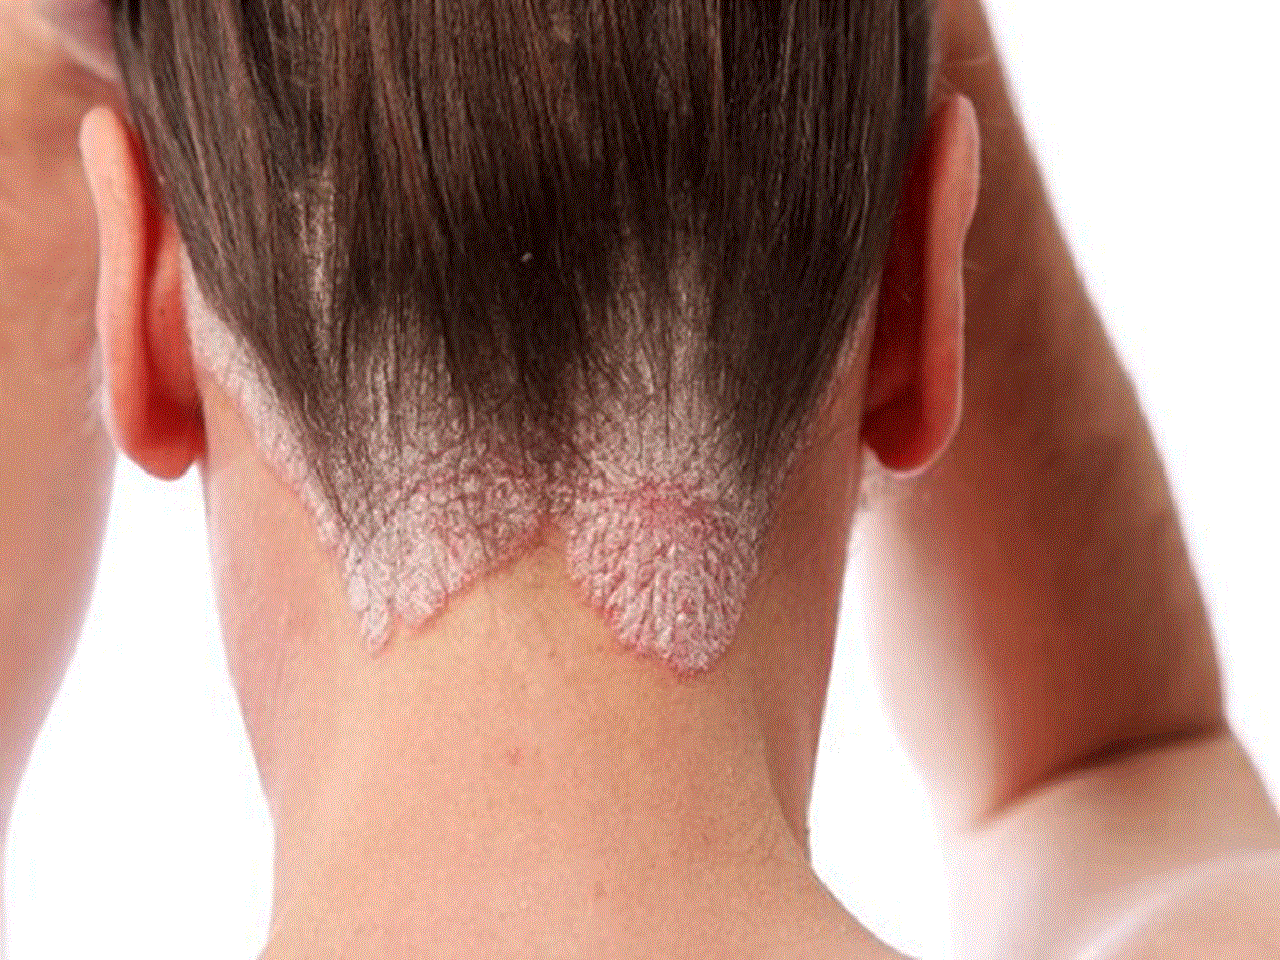 Đau da đầu là triệu chứng của những bệnh gì?
